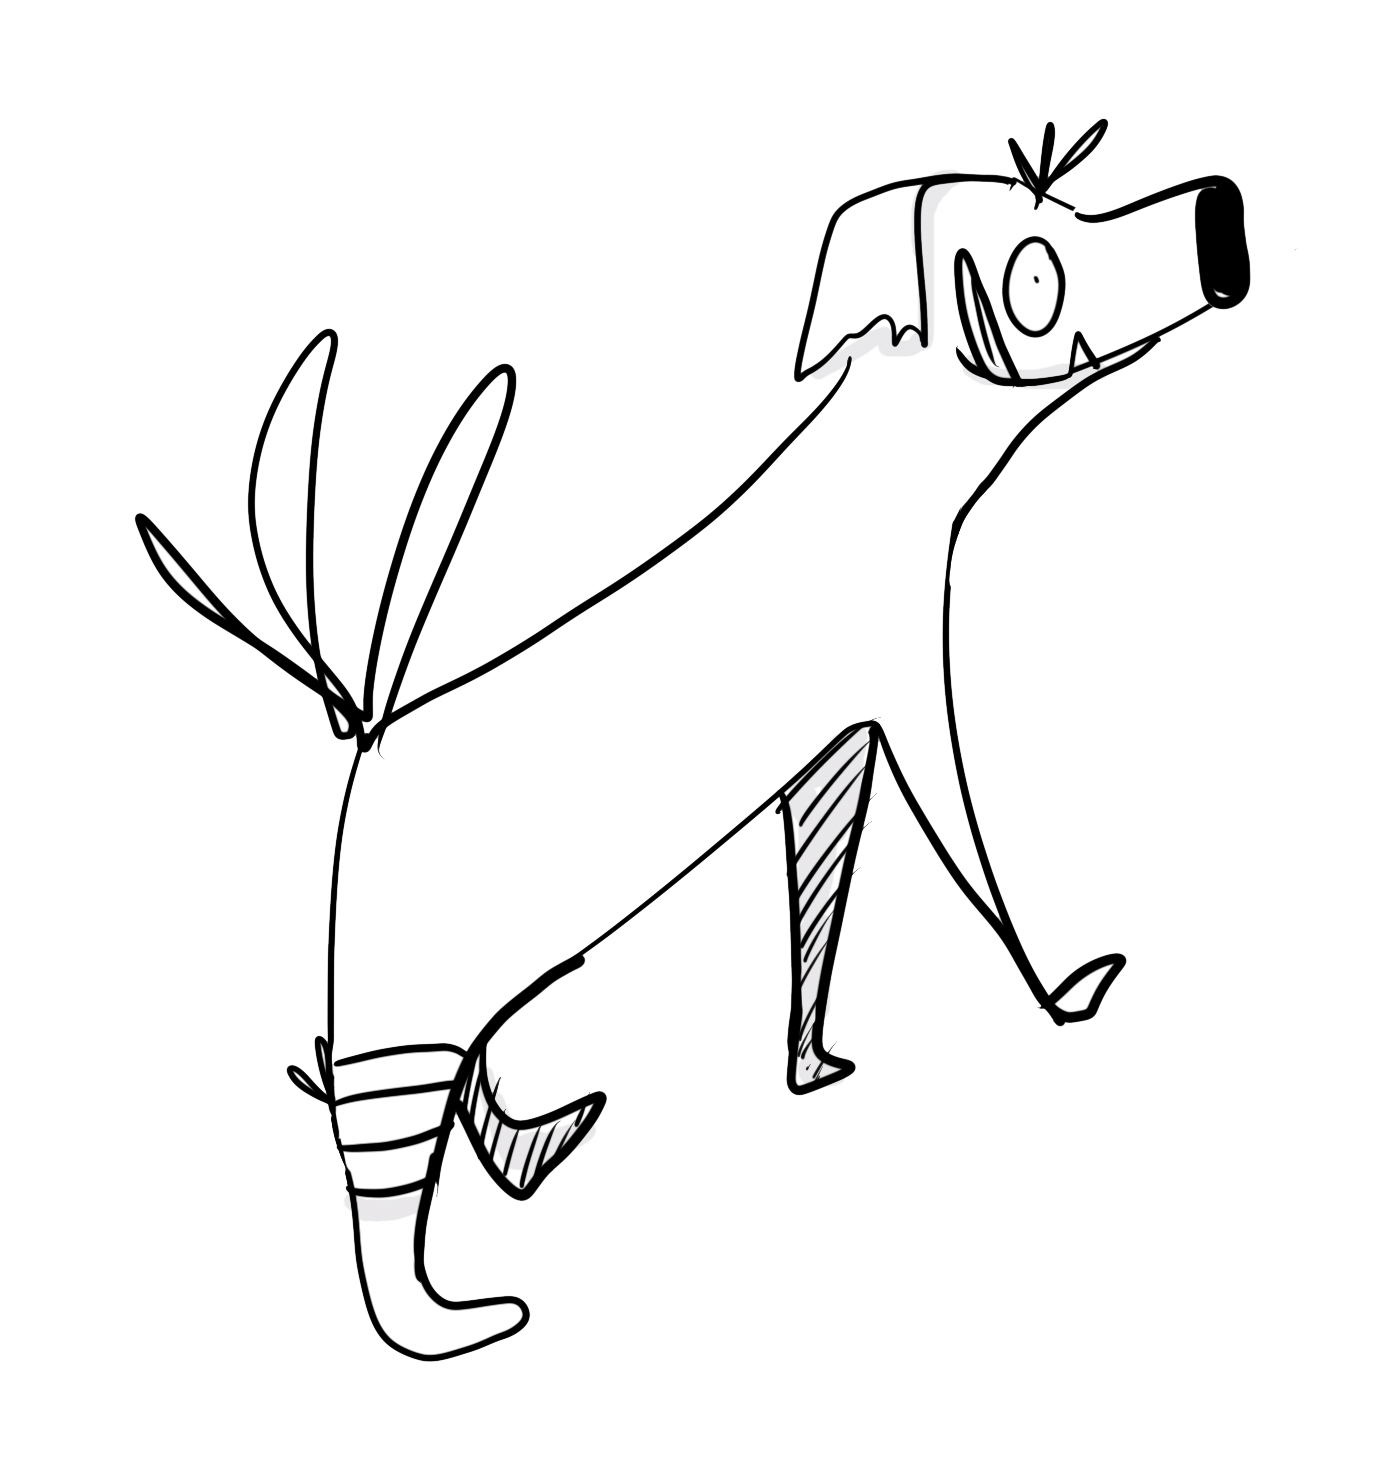 Firefly in a jar dessin de chien